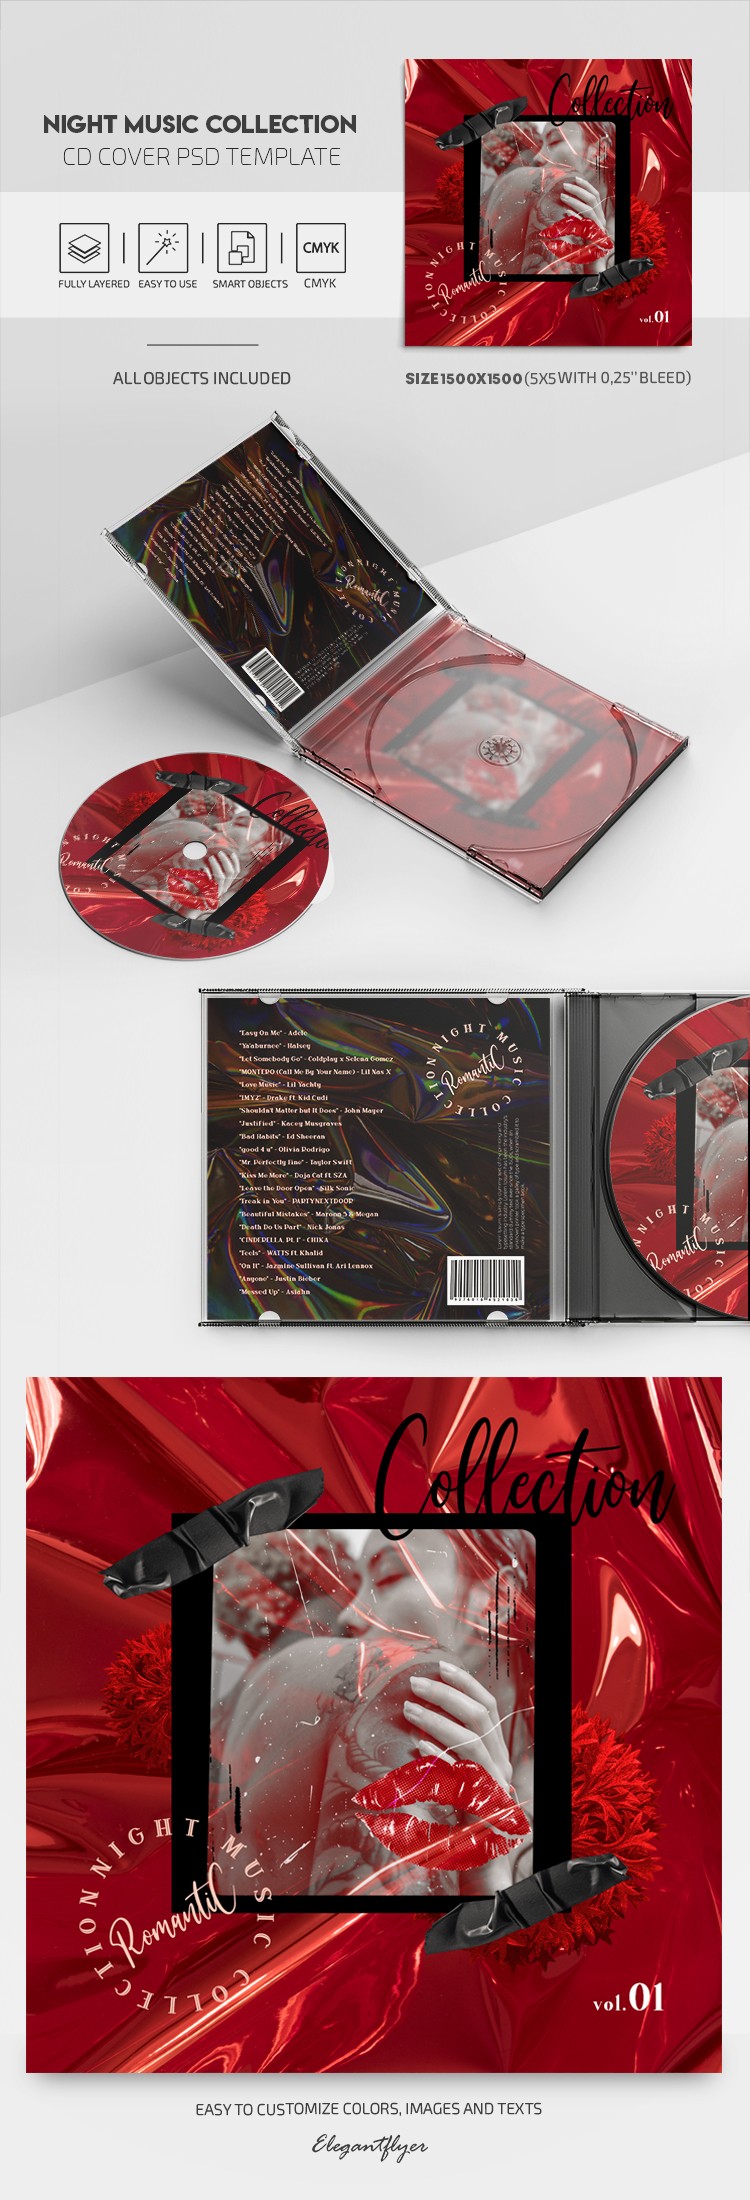 Colección de música nocturna - Portada del CD by ElegantFlyer